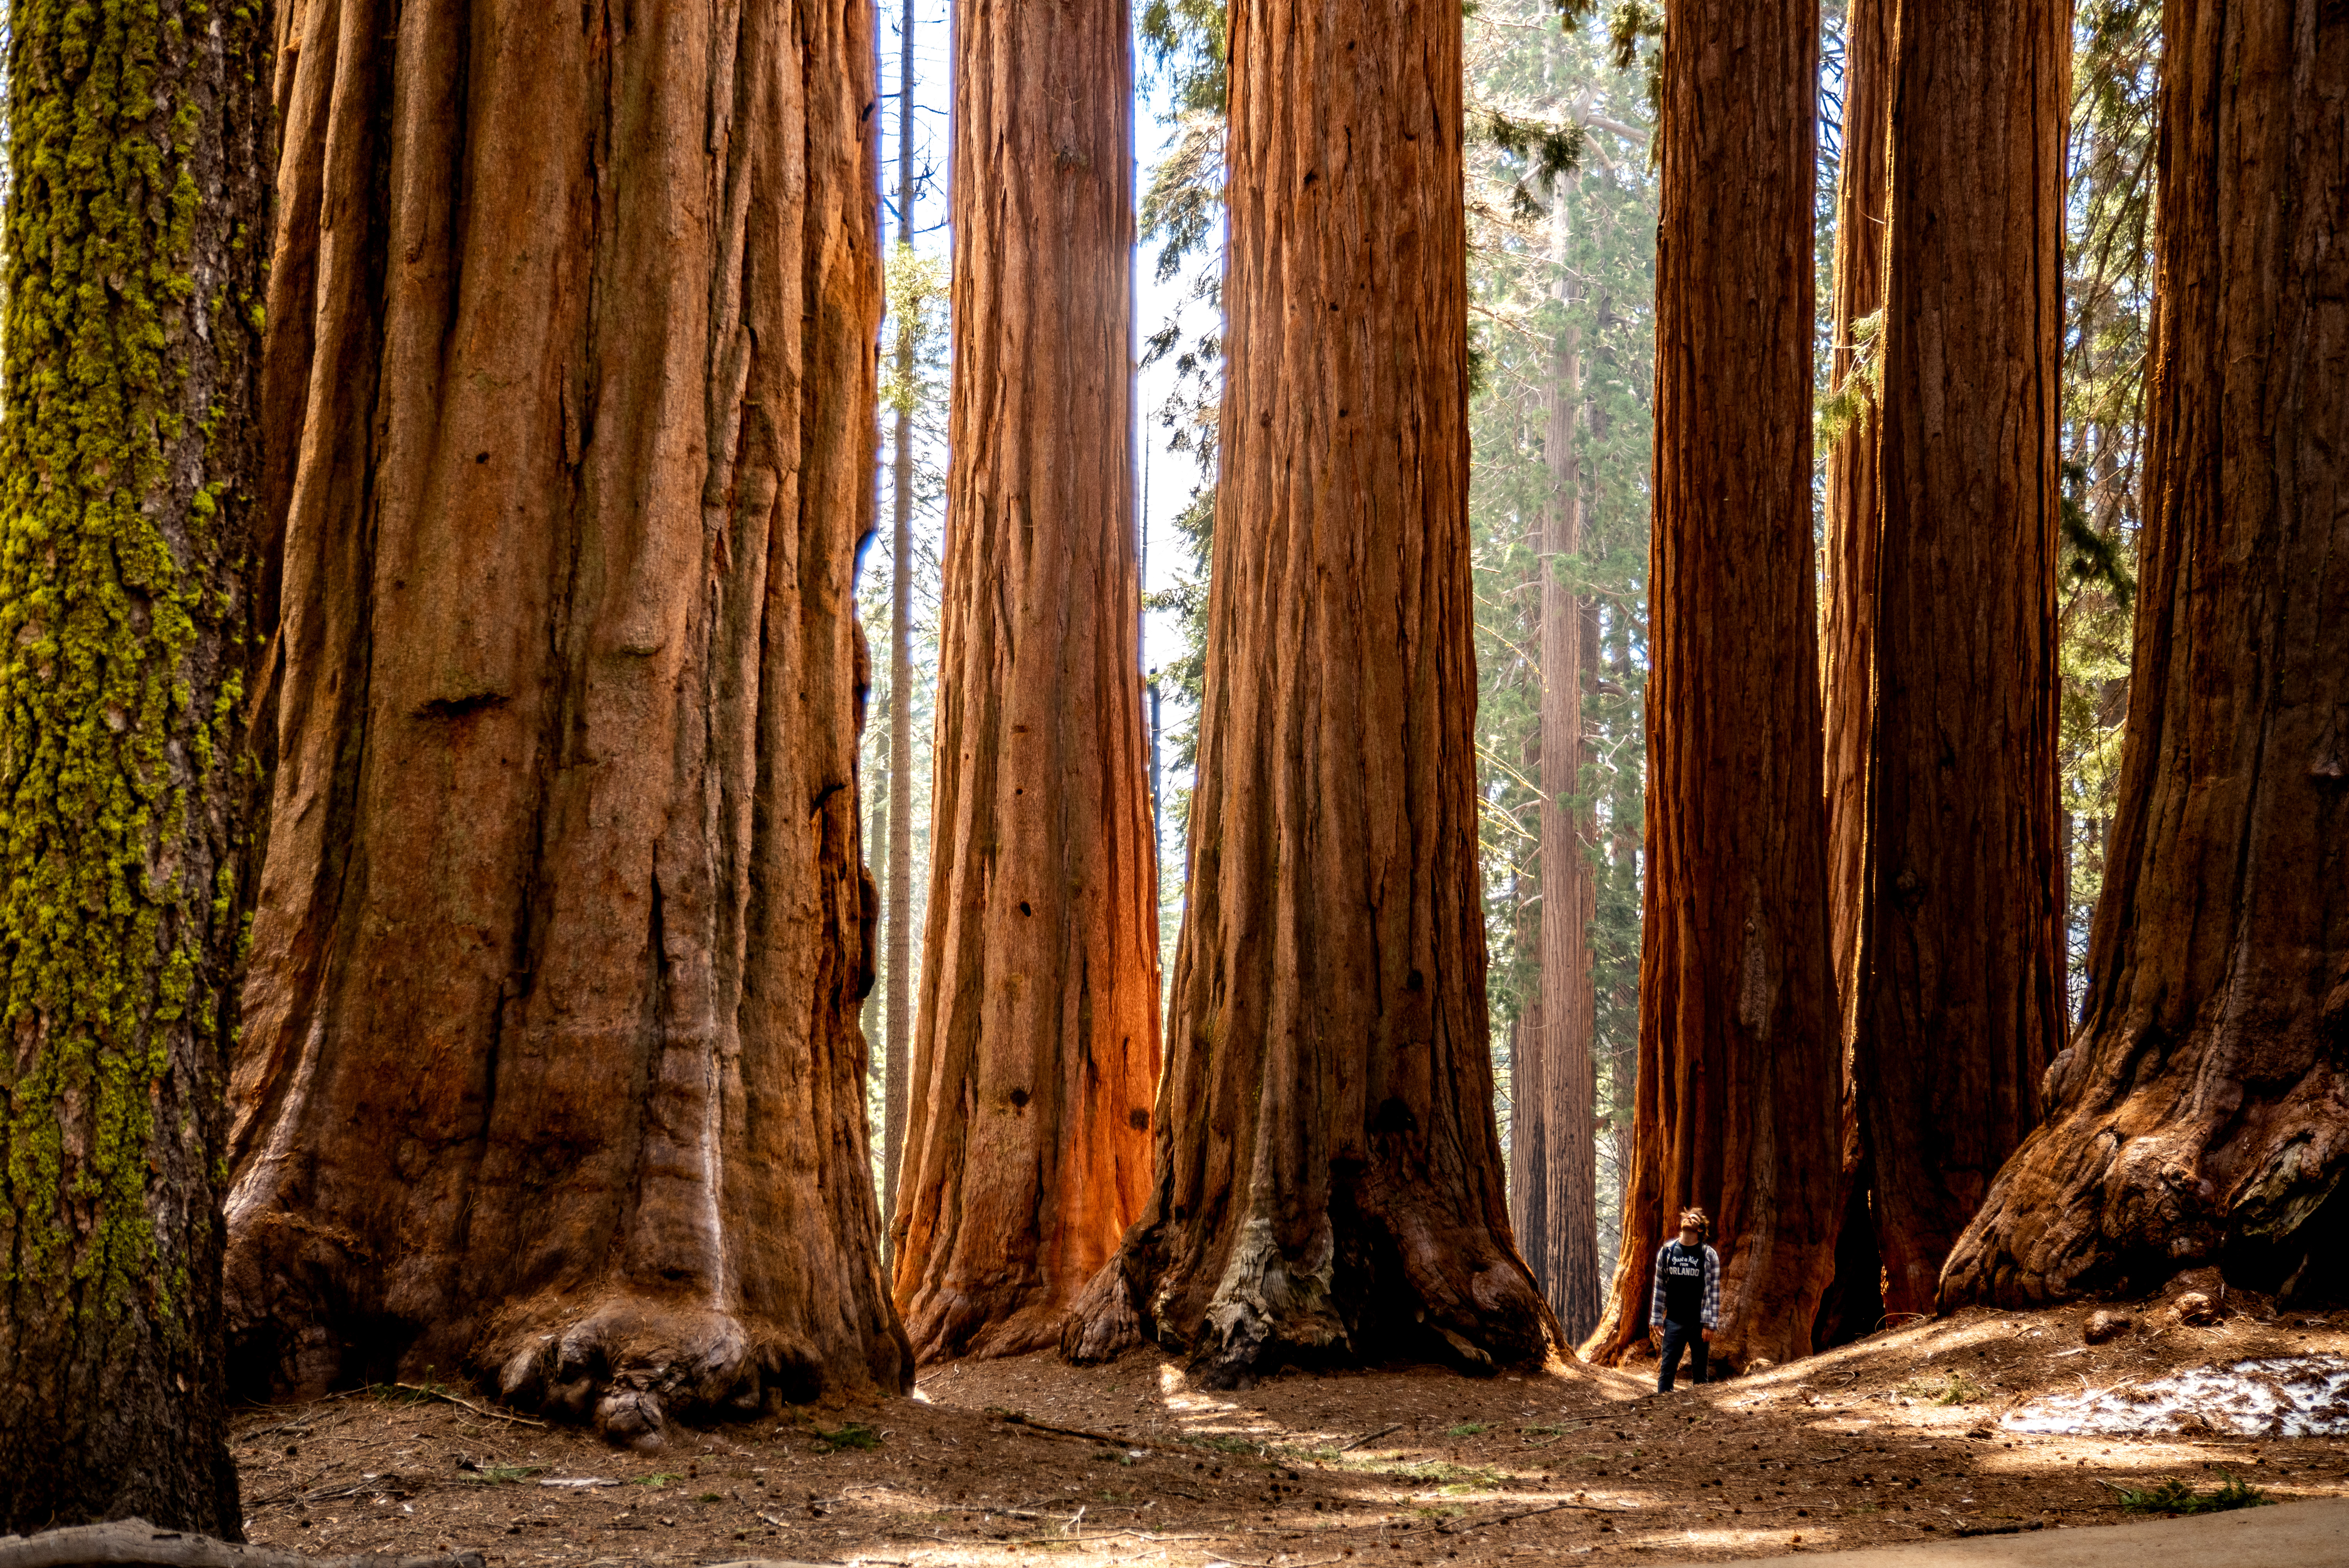 Los parques nacionales perfectos para ver secuoyas gigantes en California